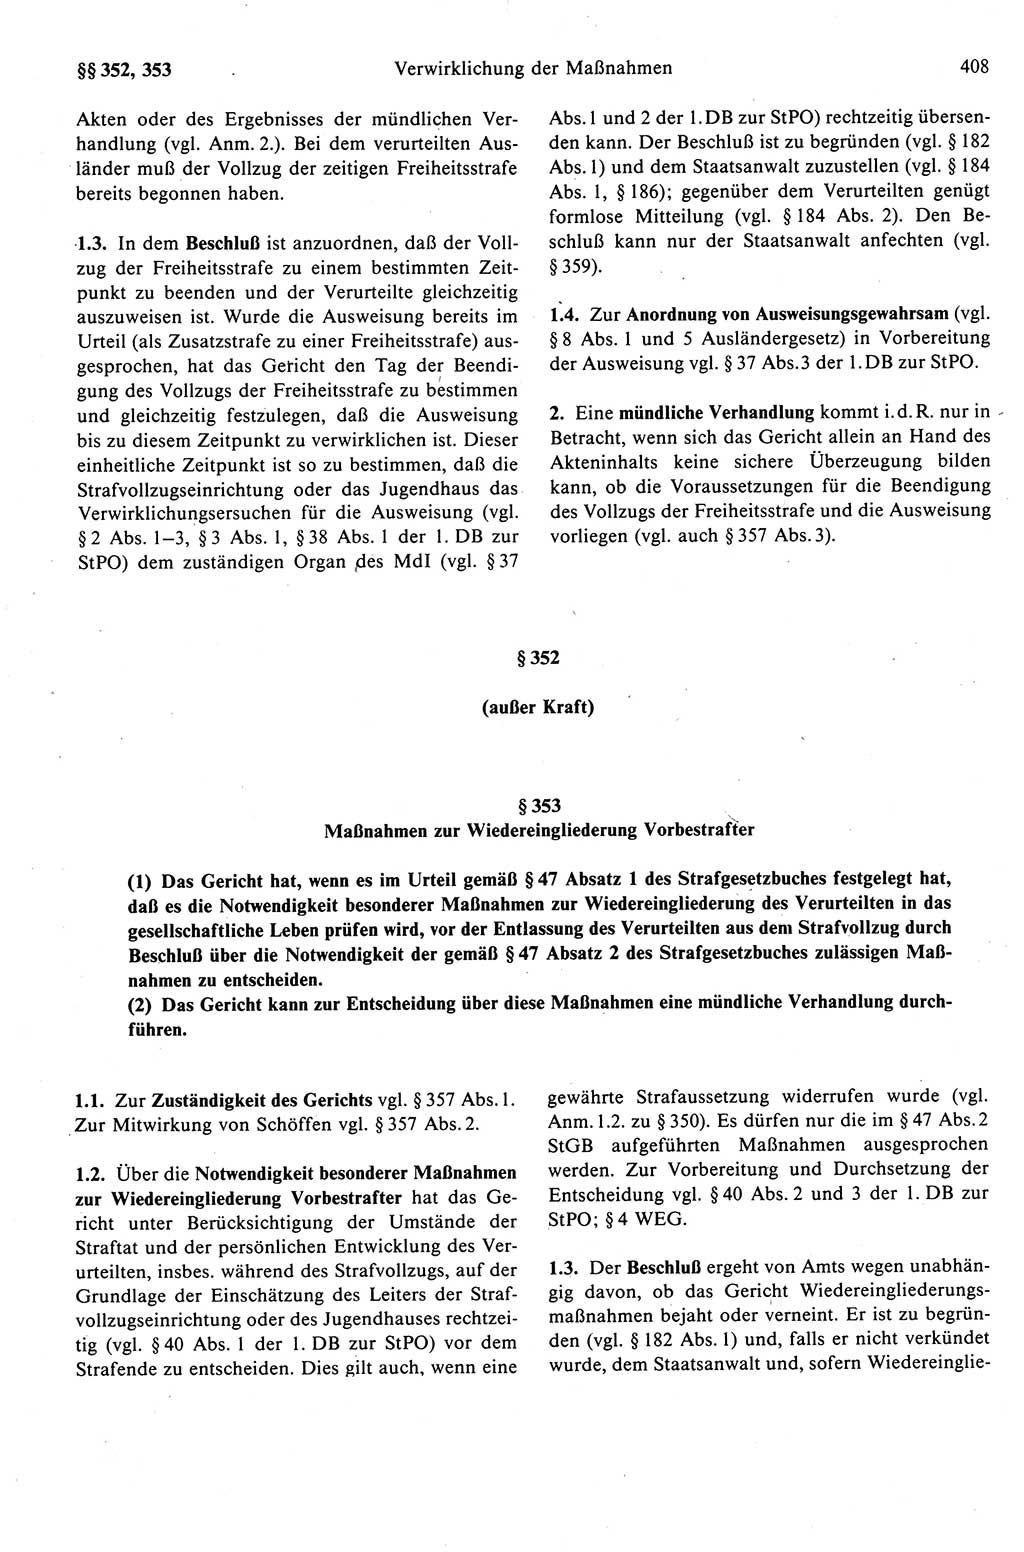 Strafprozeßrecht der DDR (Deutsche Demokratische Republik), Kommentar zur Strafprozeßordnung (StPO) 1989, Seite 408 (Strafprozeßr. DDR Komm. StPO 1989, S. 408)